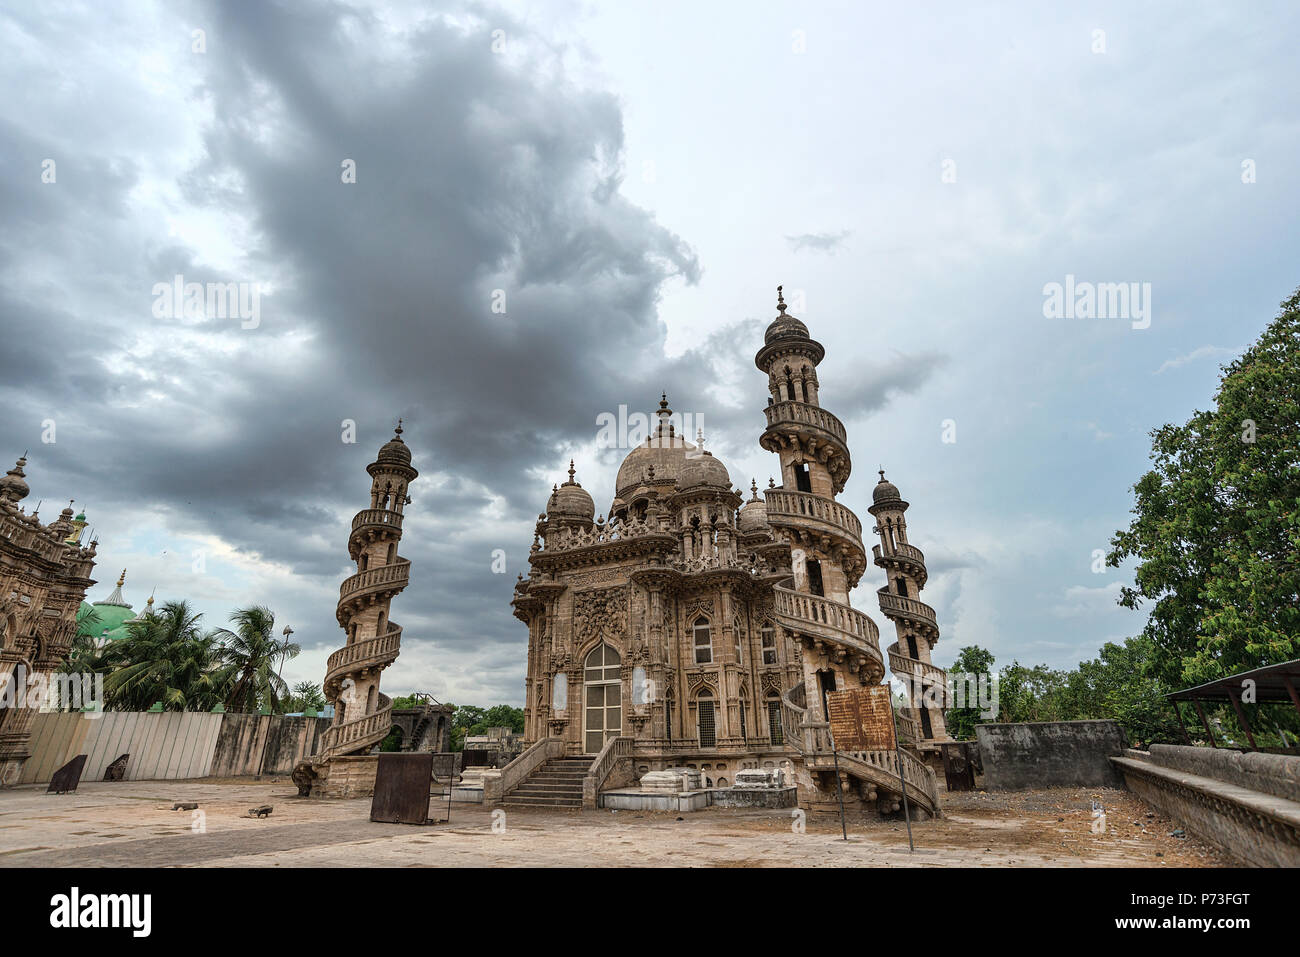 Des images grand angle de Mahabat Maqbara un tombeau de fois Mughal, un monument de l'architecture patrimoine négligé à Junagadh, Gujarat, Inde - nuages spectaculaires Banque D'Images